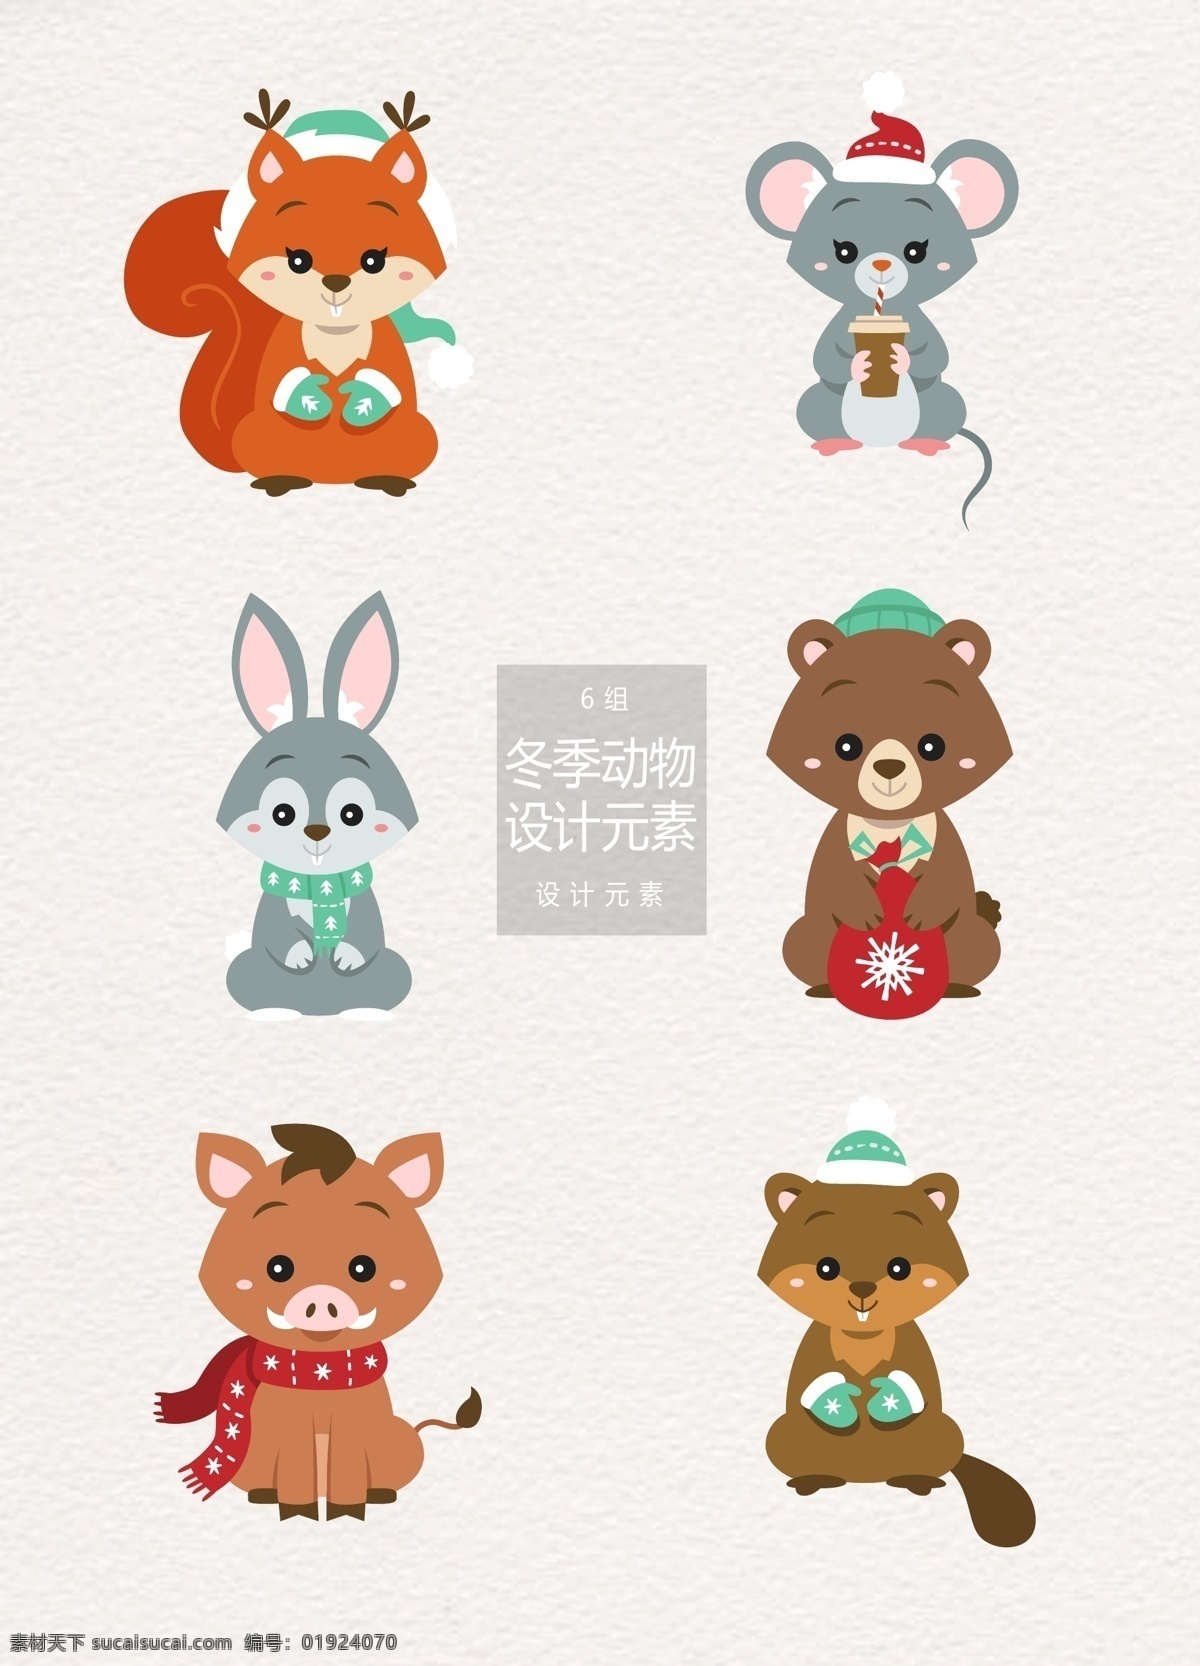 矢量 冬季 卡通 动物 元素 卡通动物 冬天 兔子 设计元素 狐狸 老鼠 狗熊 野猪 松鼠